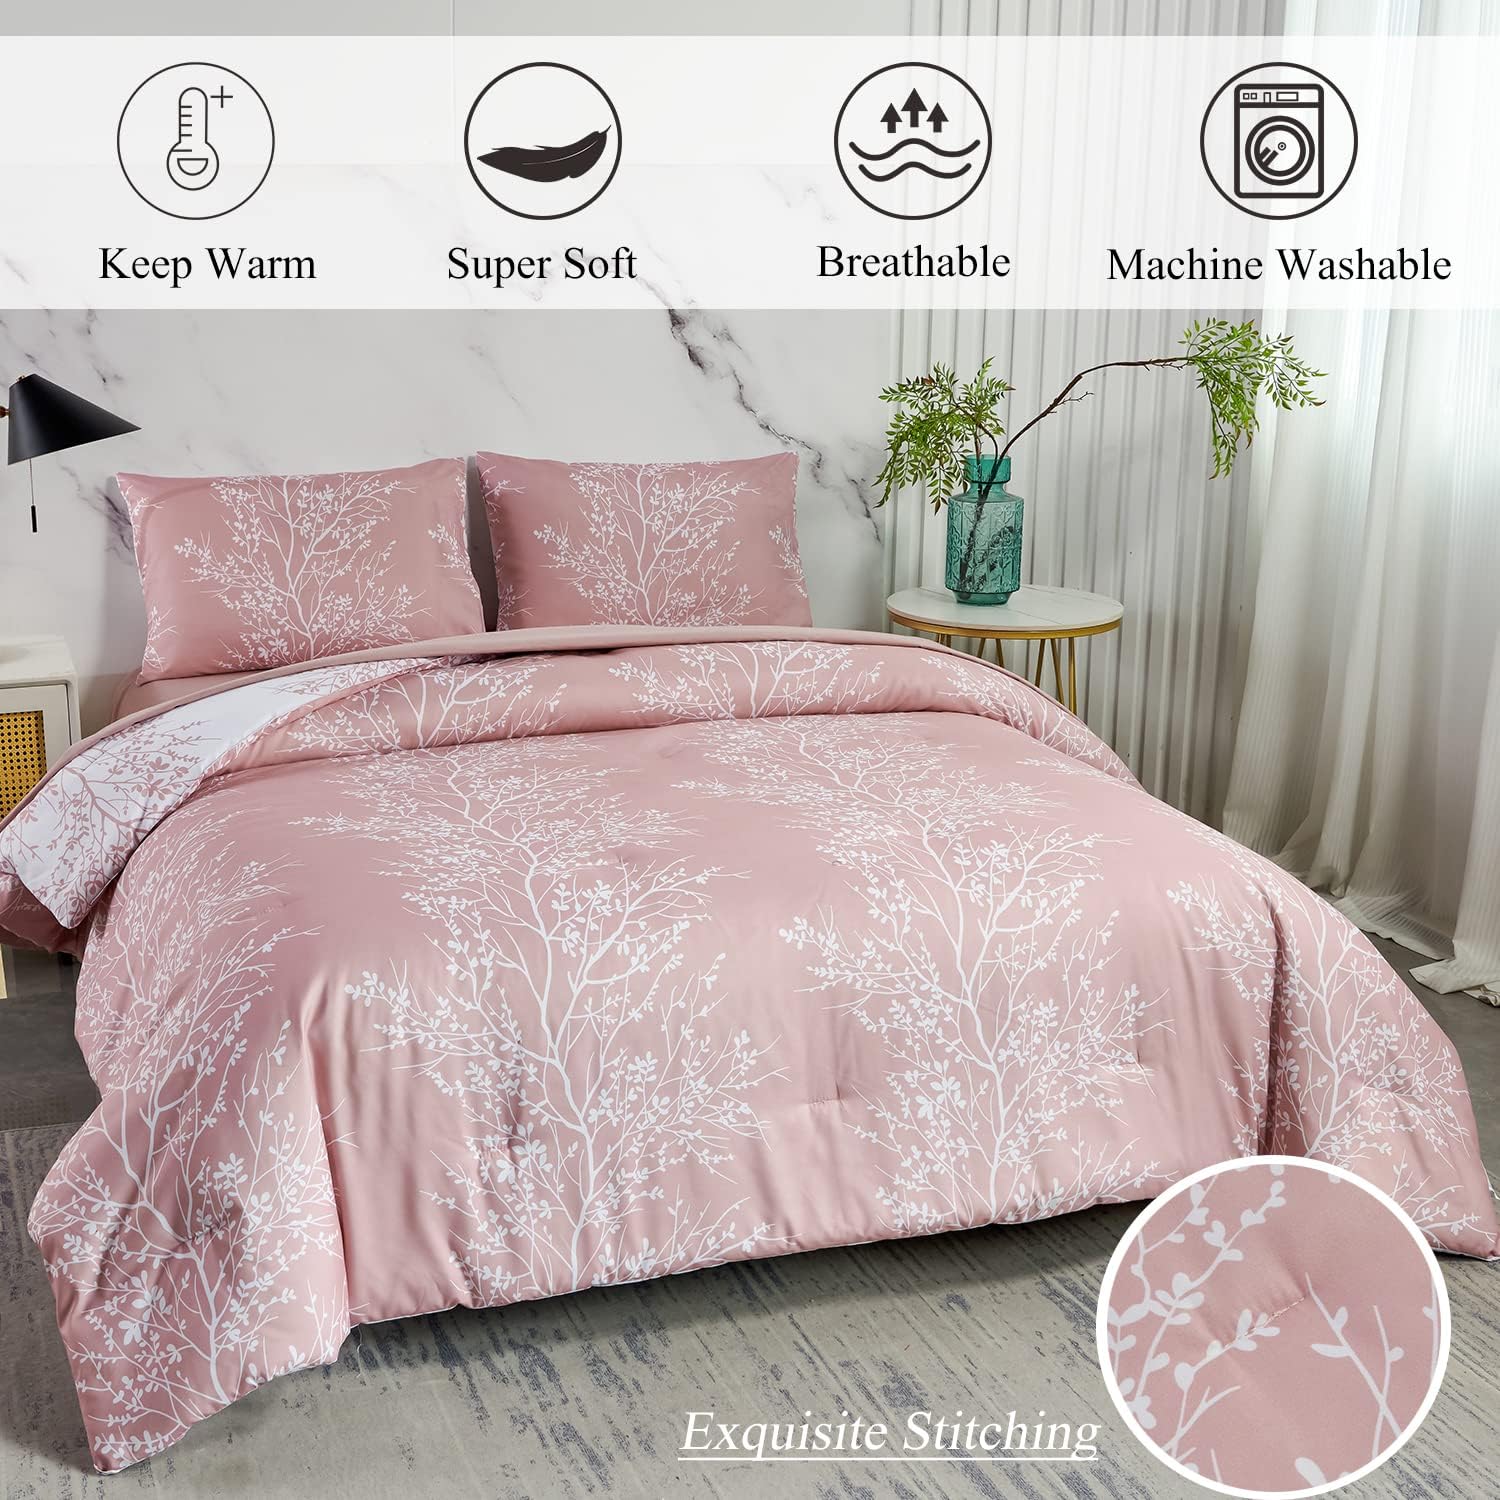 Bed in a Bag Juego de edredón de 5 piezas, tamaño Queen, color rosa, con patrón